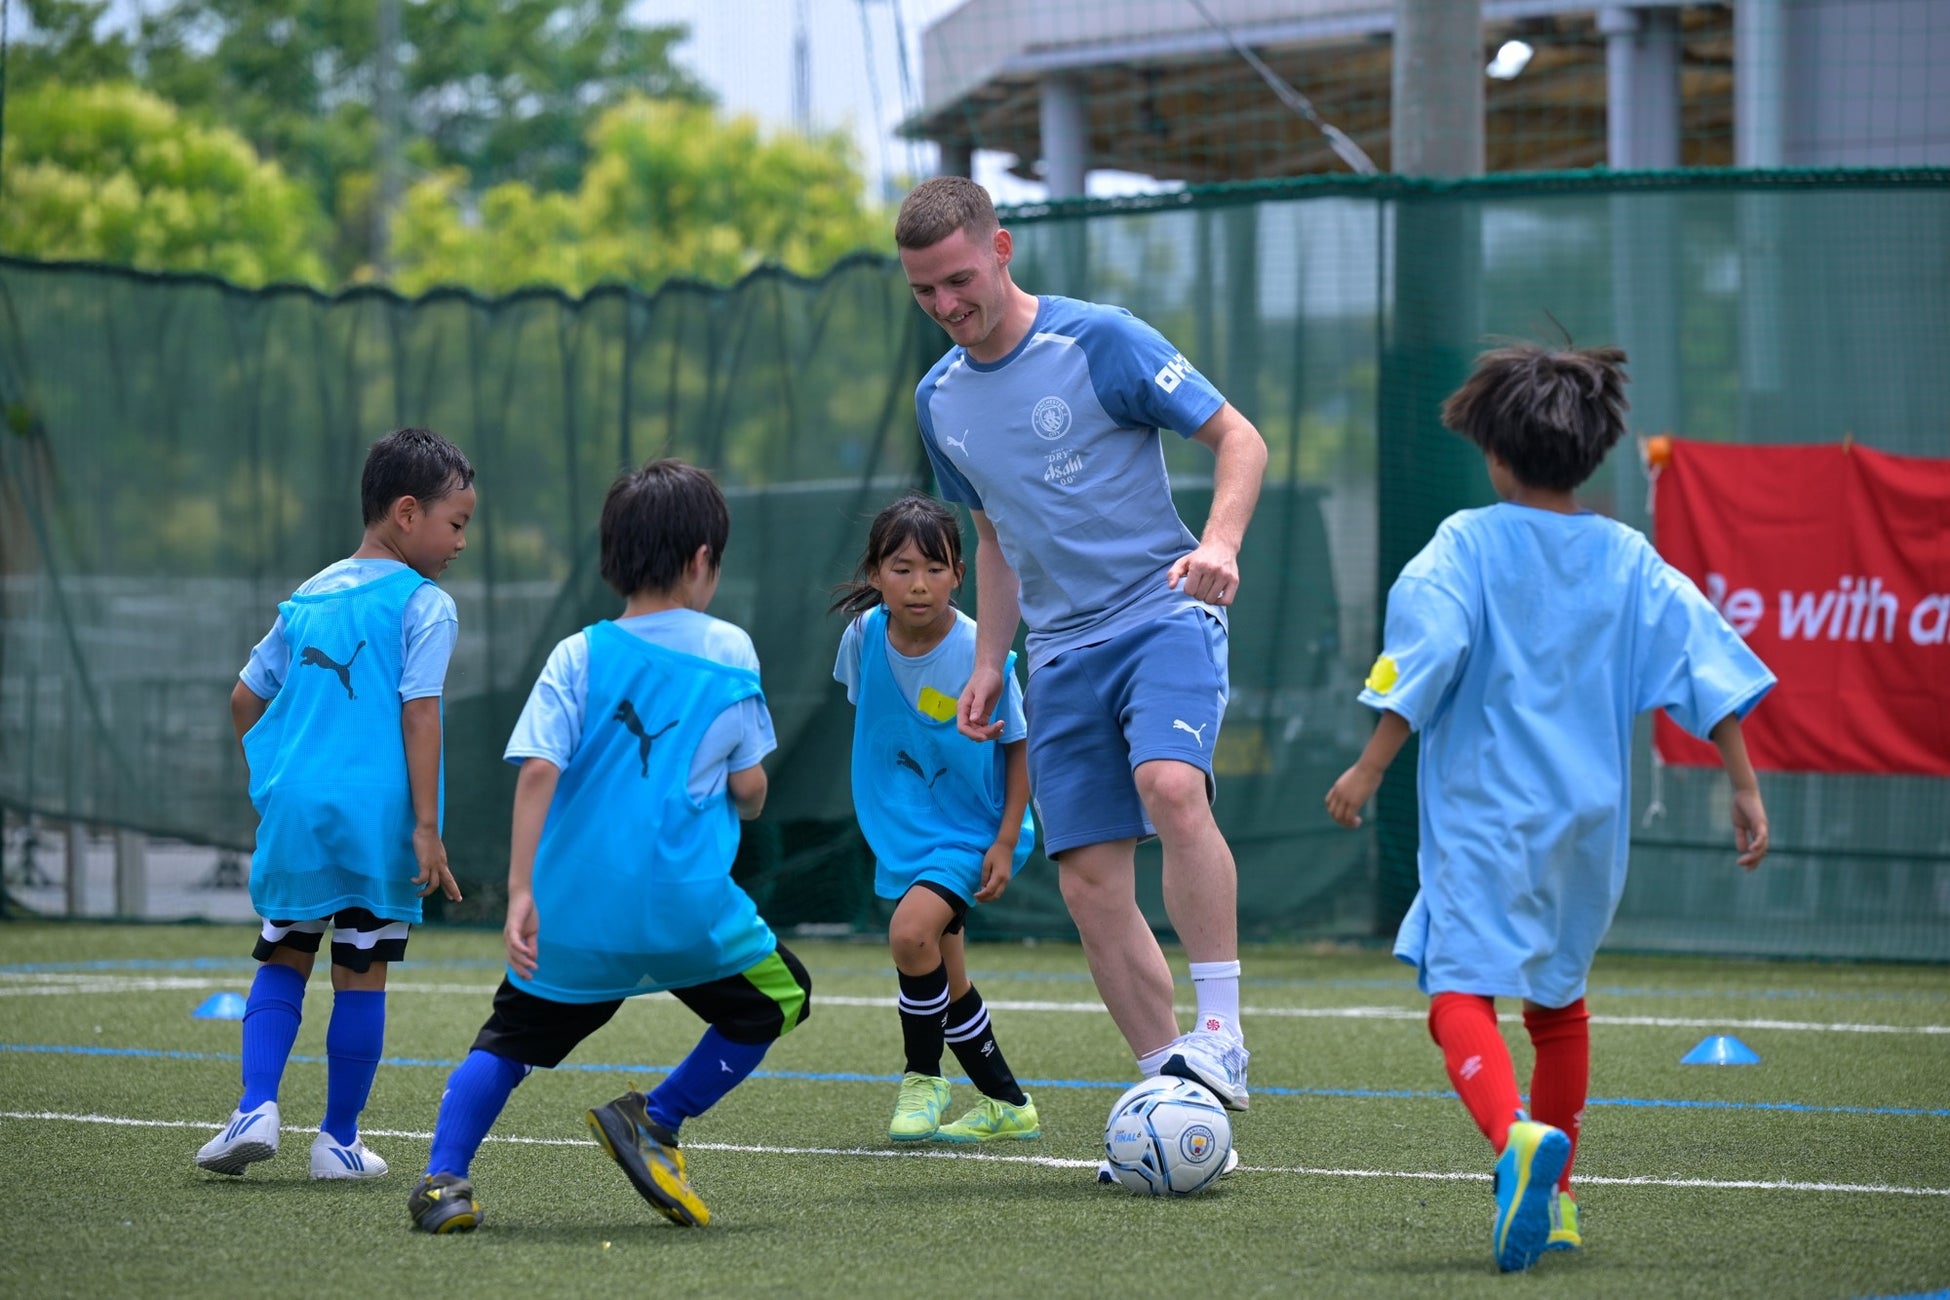 マンチェスター・シティFCから寄付のお知らせ。経済的な貧困や社会格差によってサッカーをしたくても諦めている子どもたちの支援活動を進める。